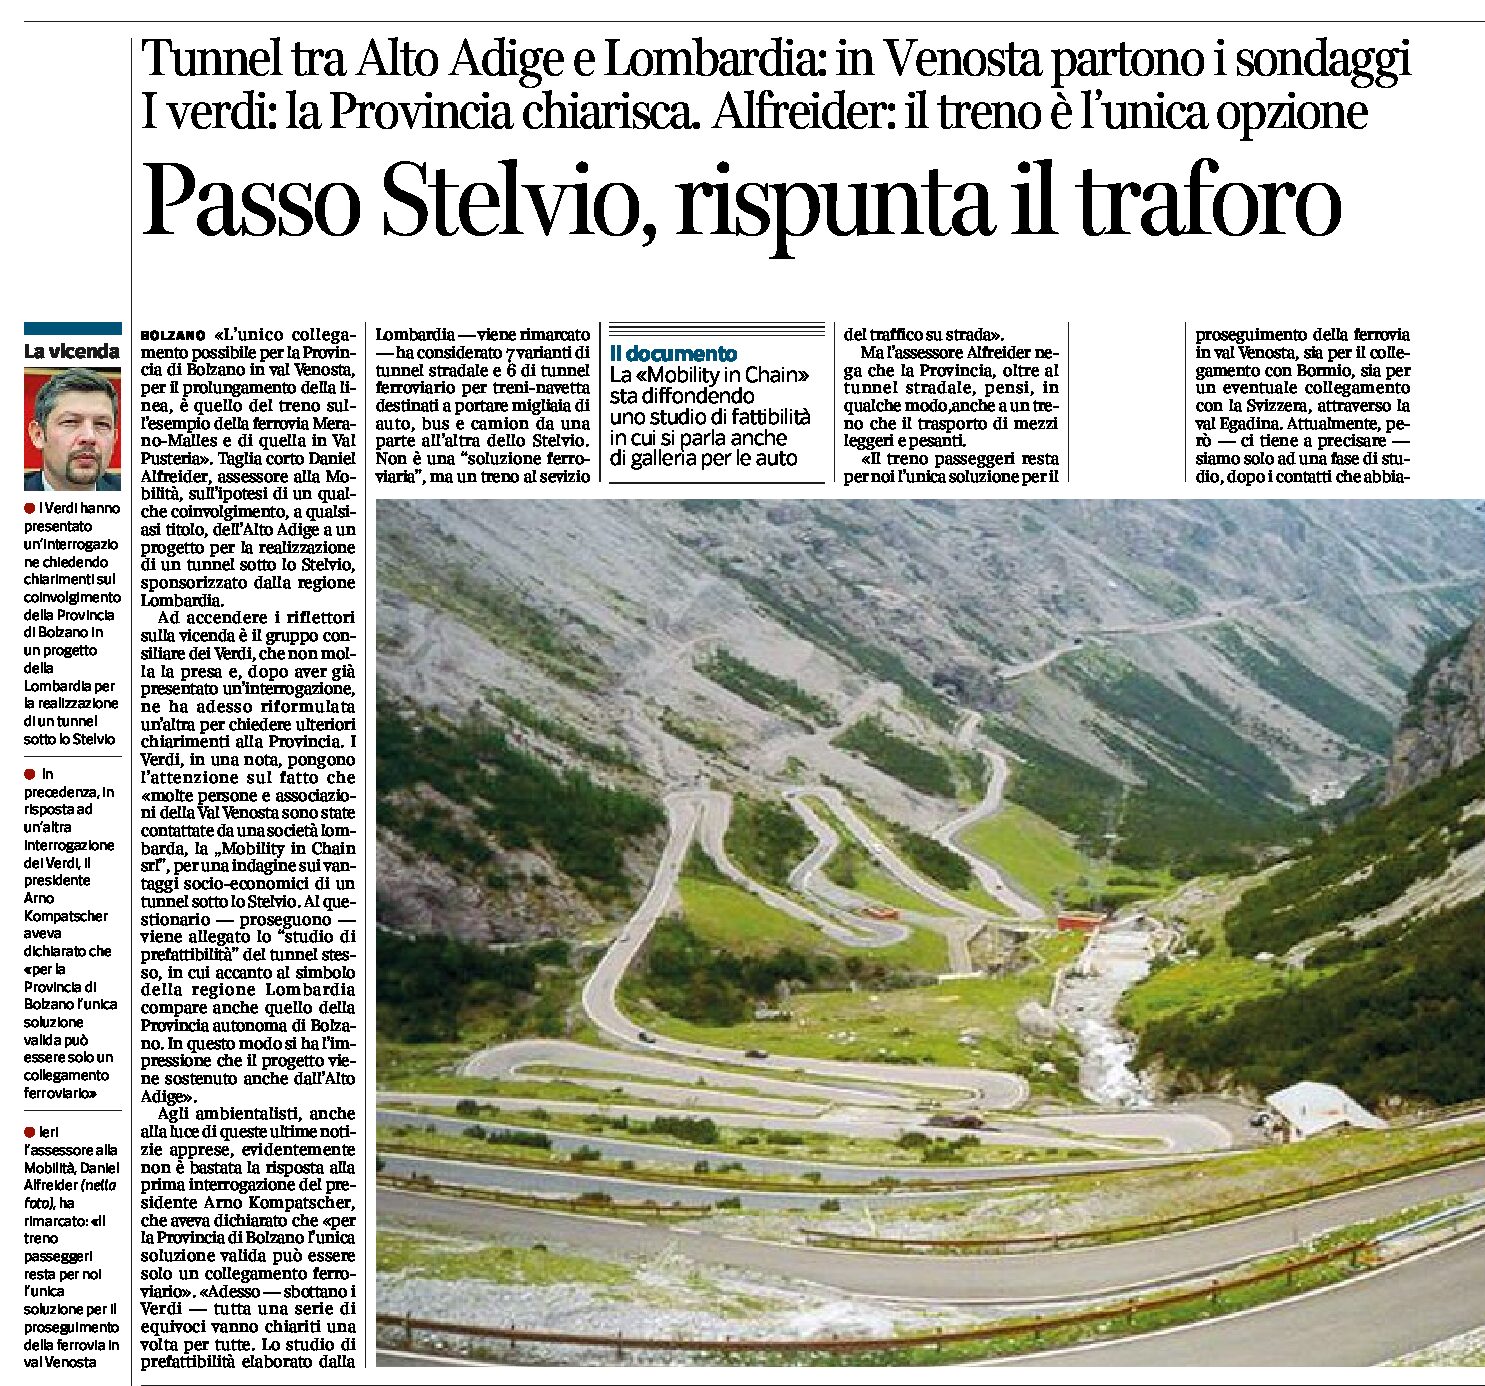 Passo Stelvio: rispunta il traforo. Tunnel tra Alto Adige e Lombardia. Sondaggi in Venosta